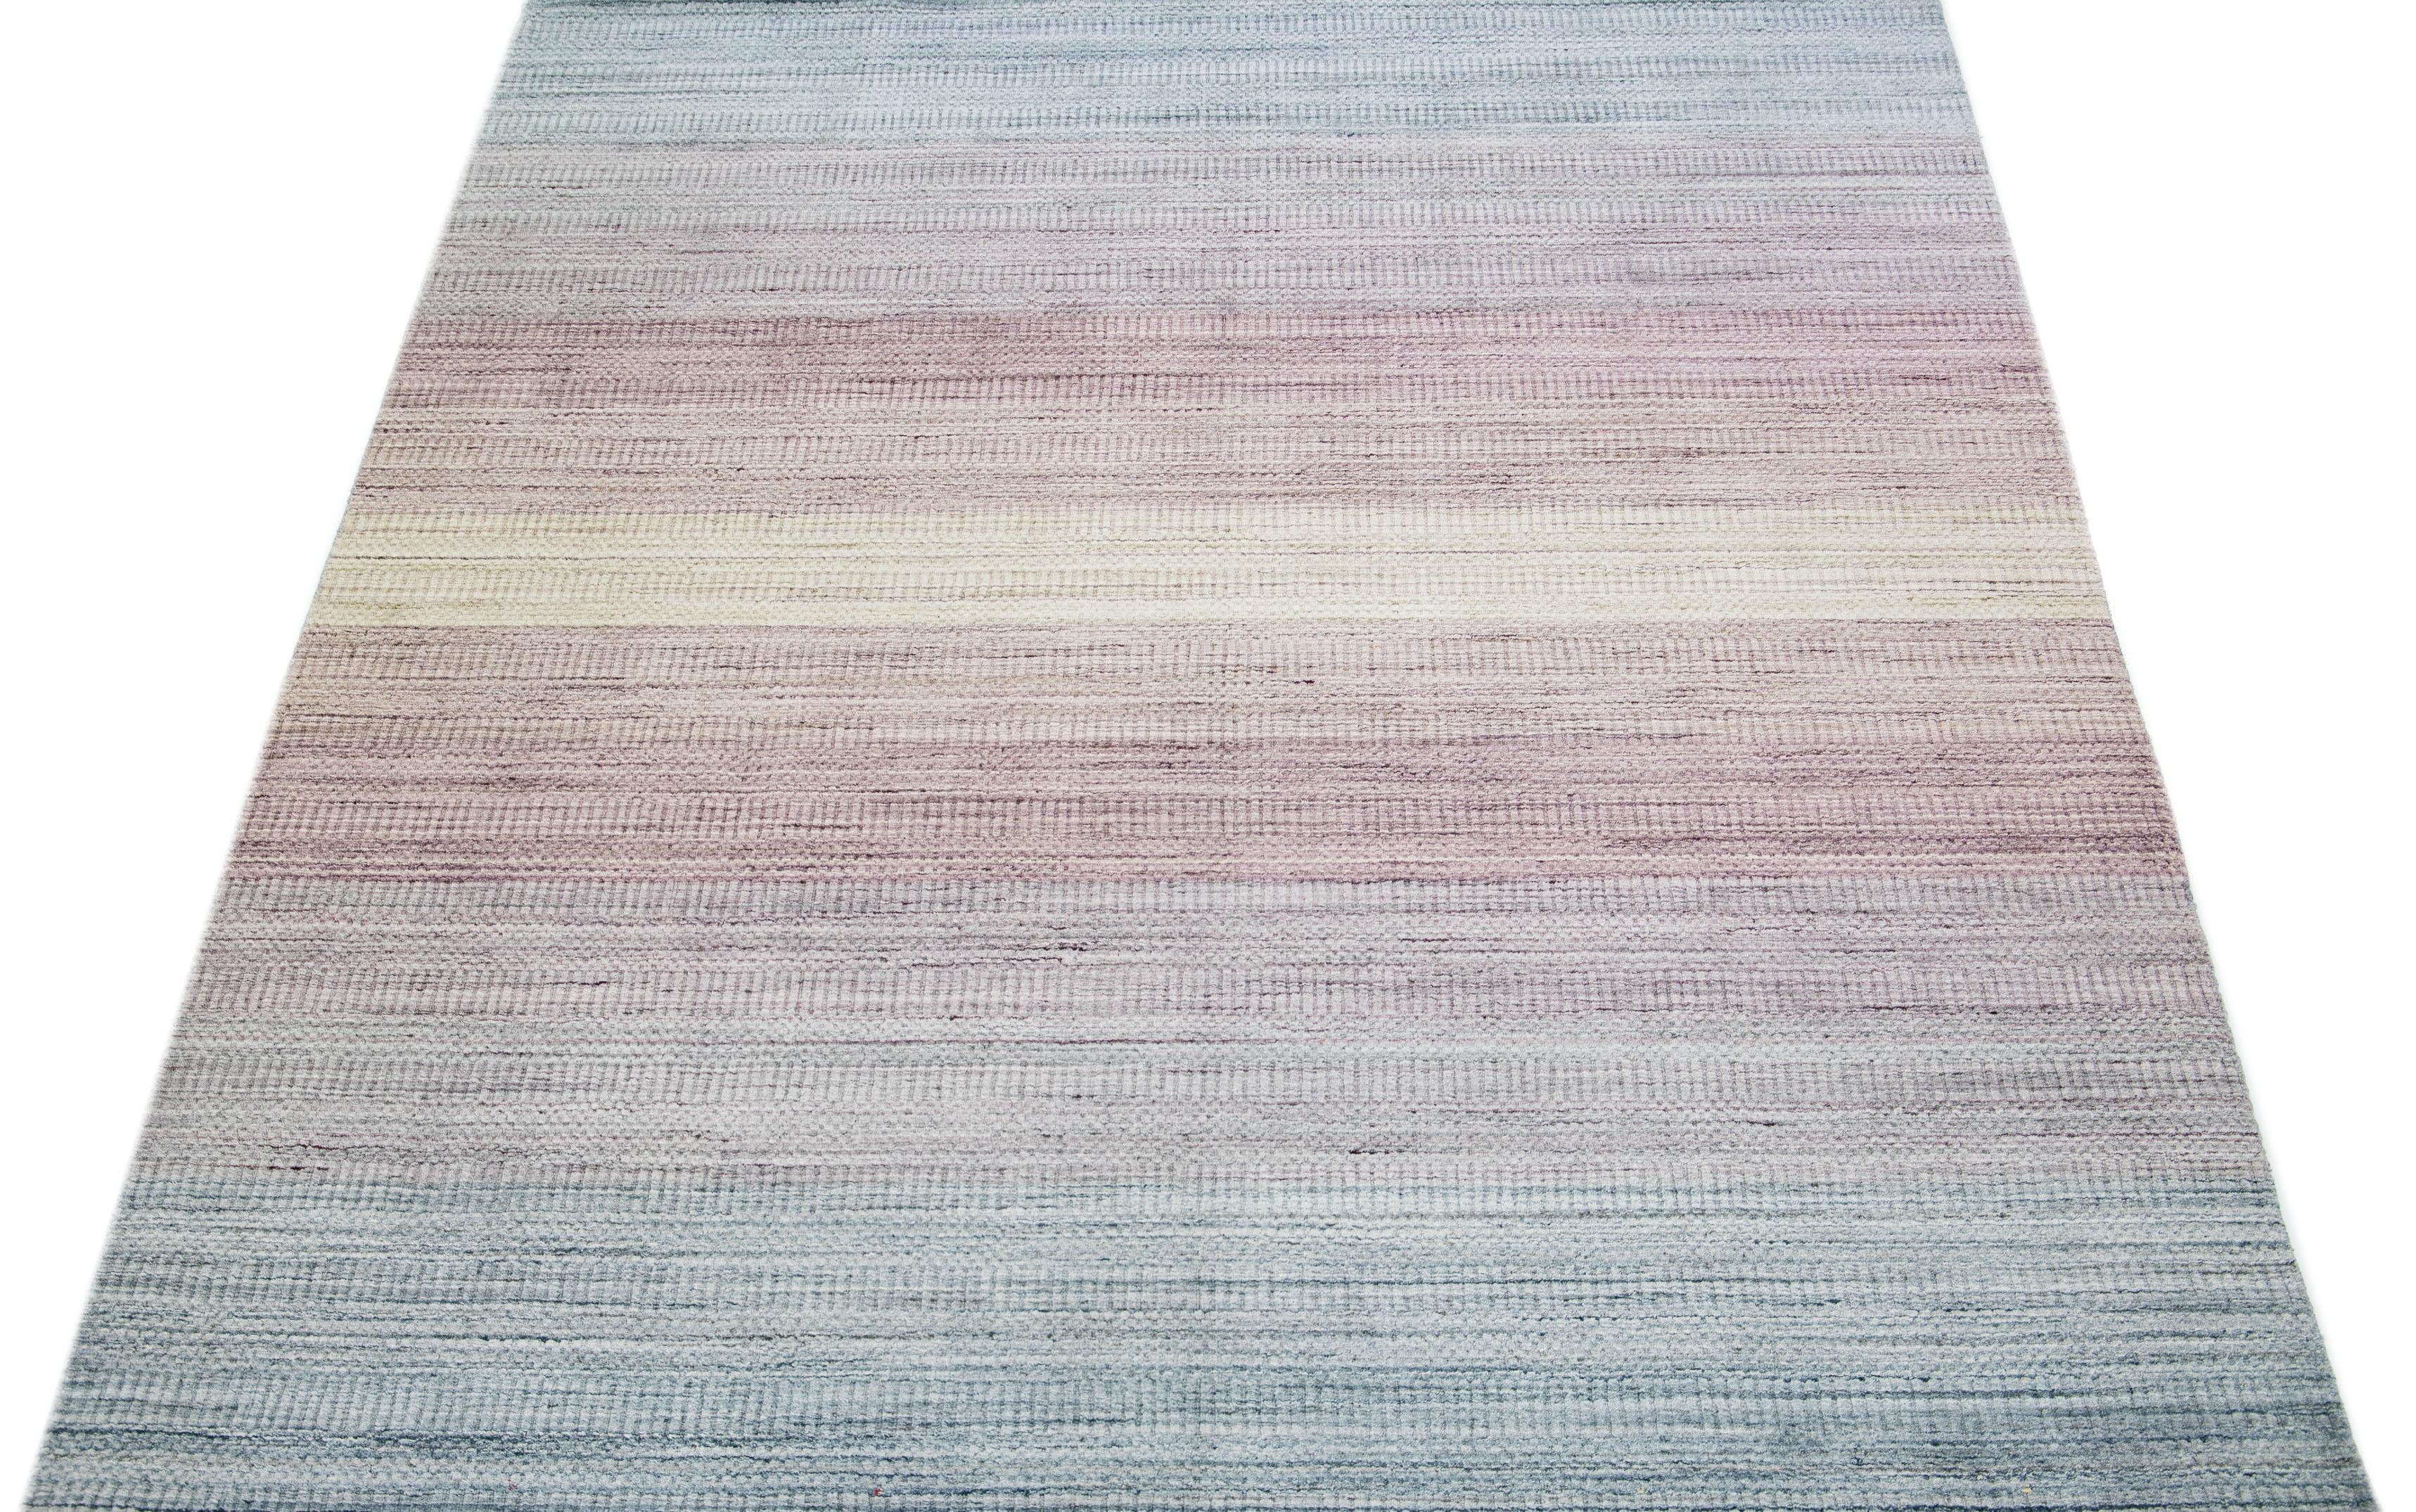 Schöne Apadana's handgefertigte Bambus & Seide indischen Rillen Teppich mit rosa und blauen Farben Feld. Dieser Teppich aus der Groove Collection hat ein durchgehendes Streifendesign.

Dieser Teppich misst 7'6